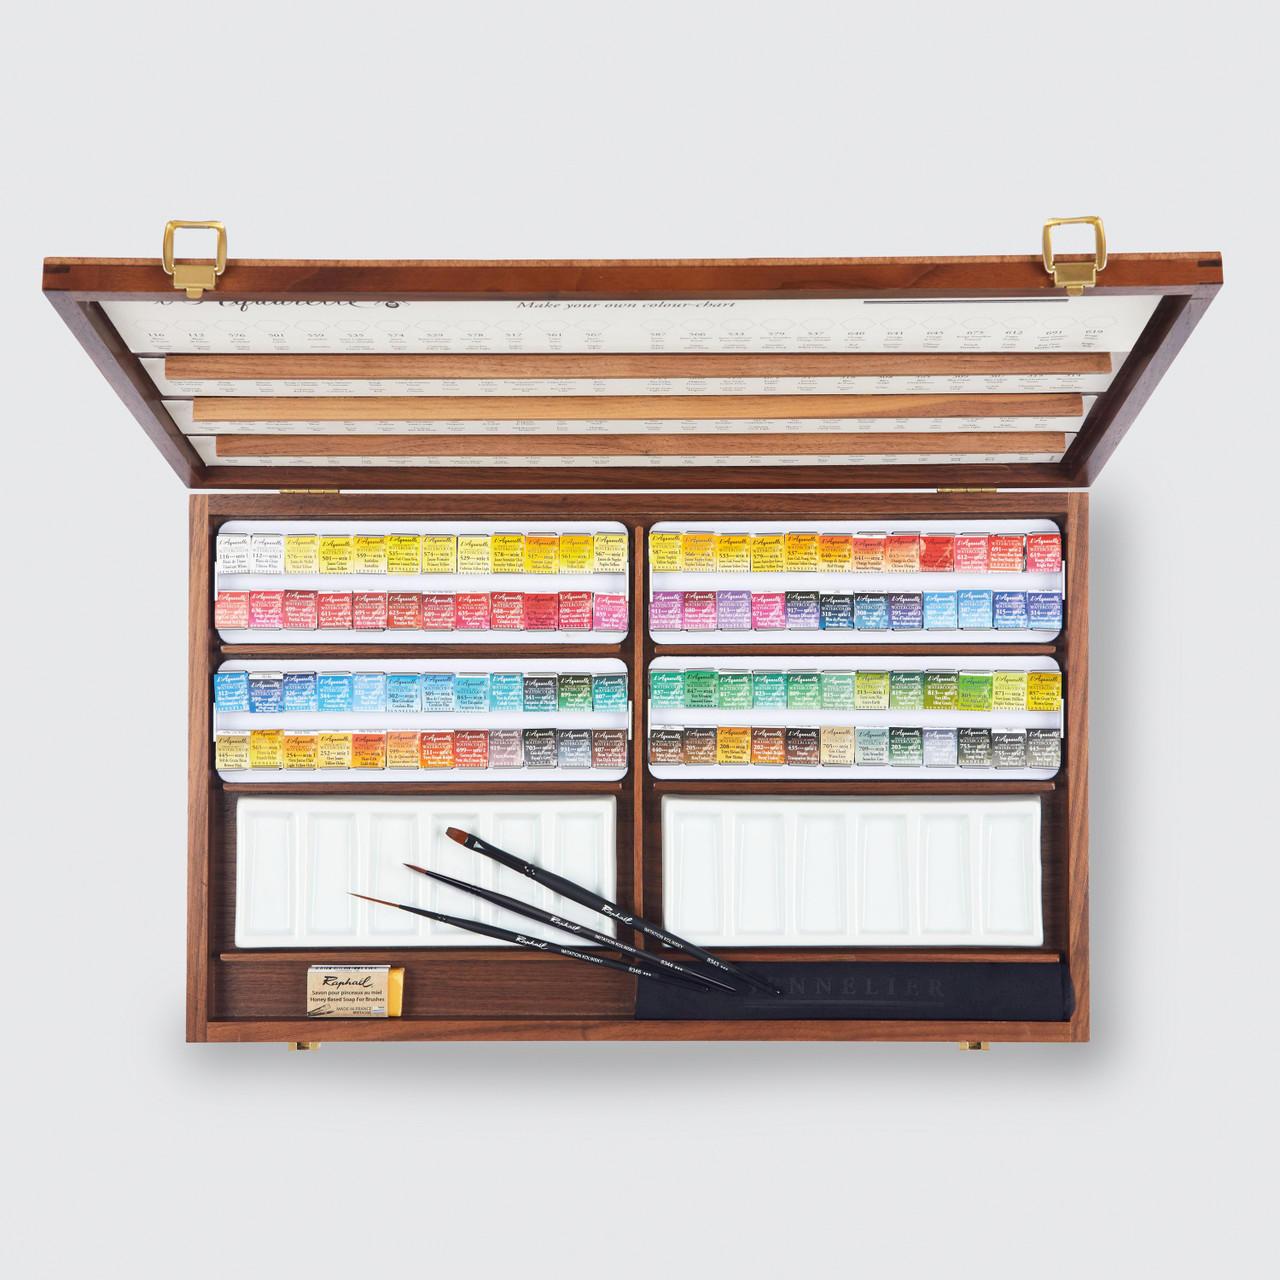 Watercolours: Sennelier Luxury Walnut Wood Box Half-Pan Set (review)